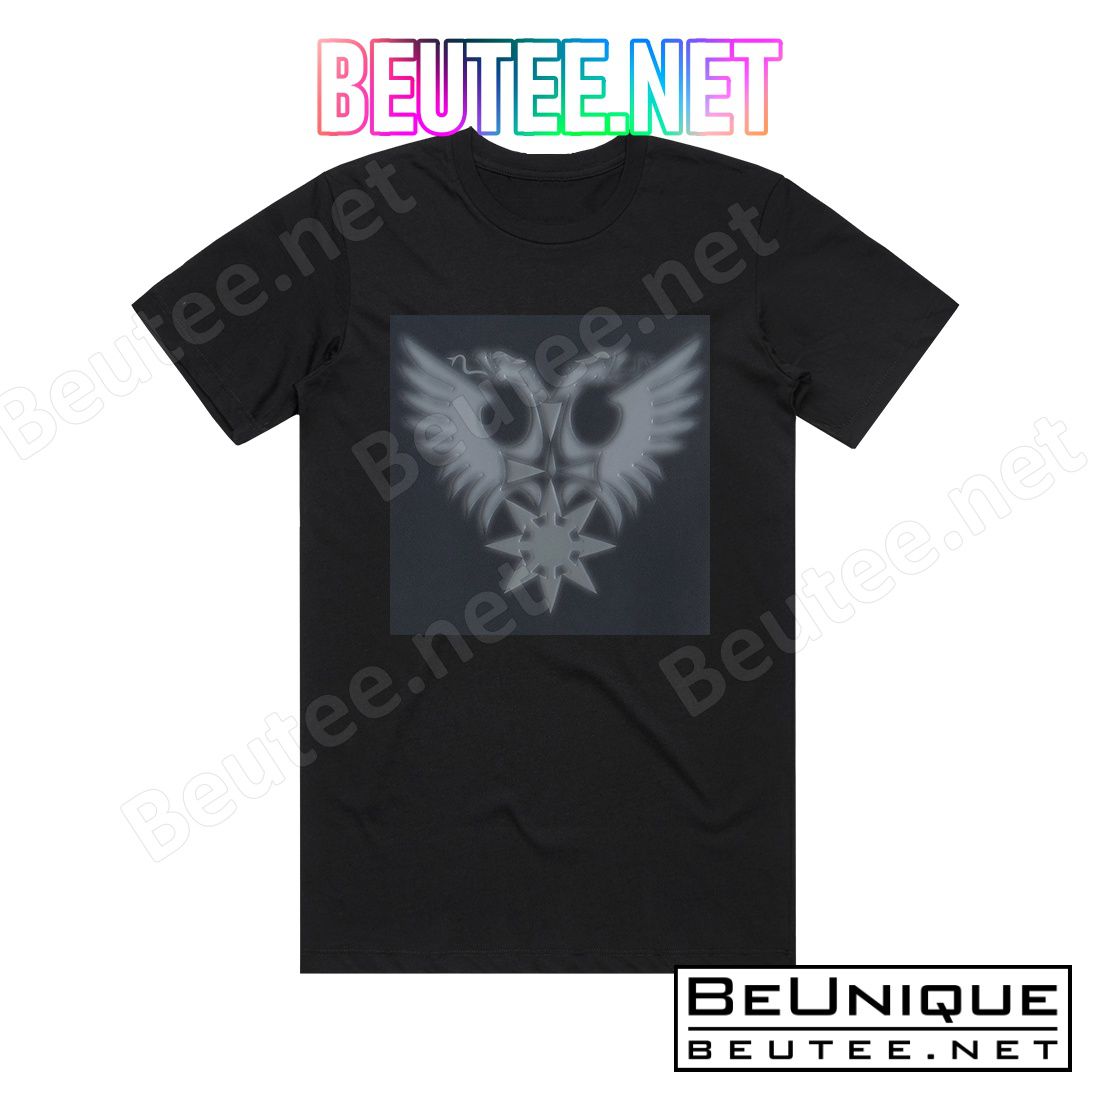 Behemoth At The Arena Ov Aion  Live Apostasy Album Cover T-Shirt